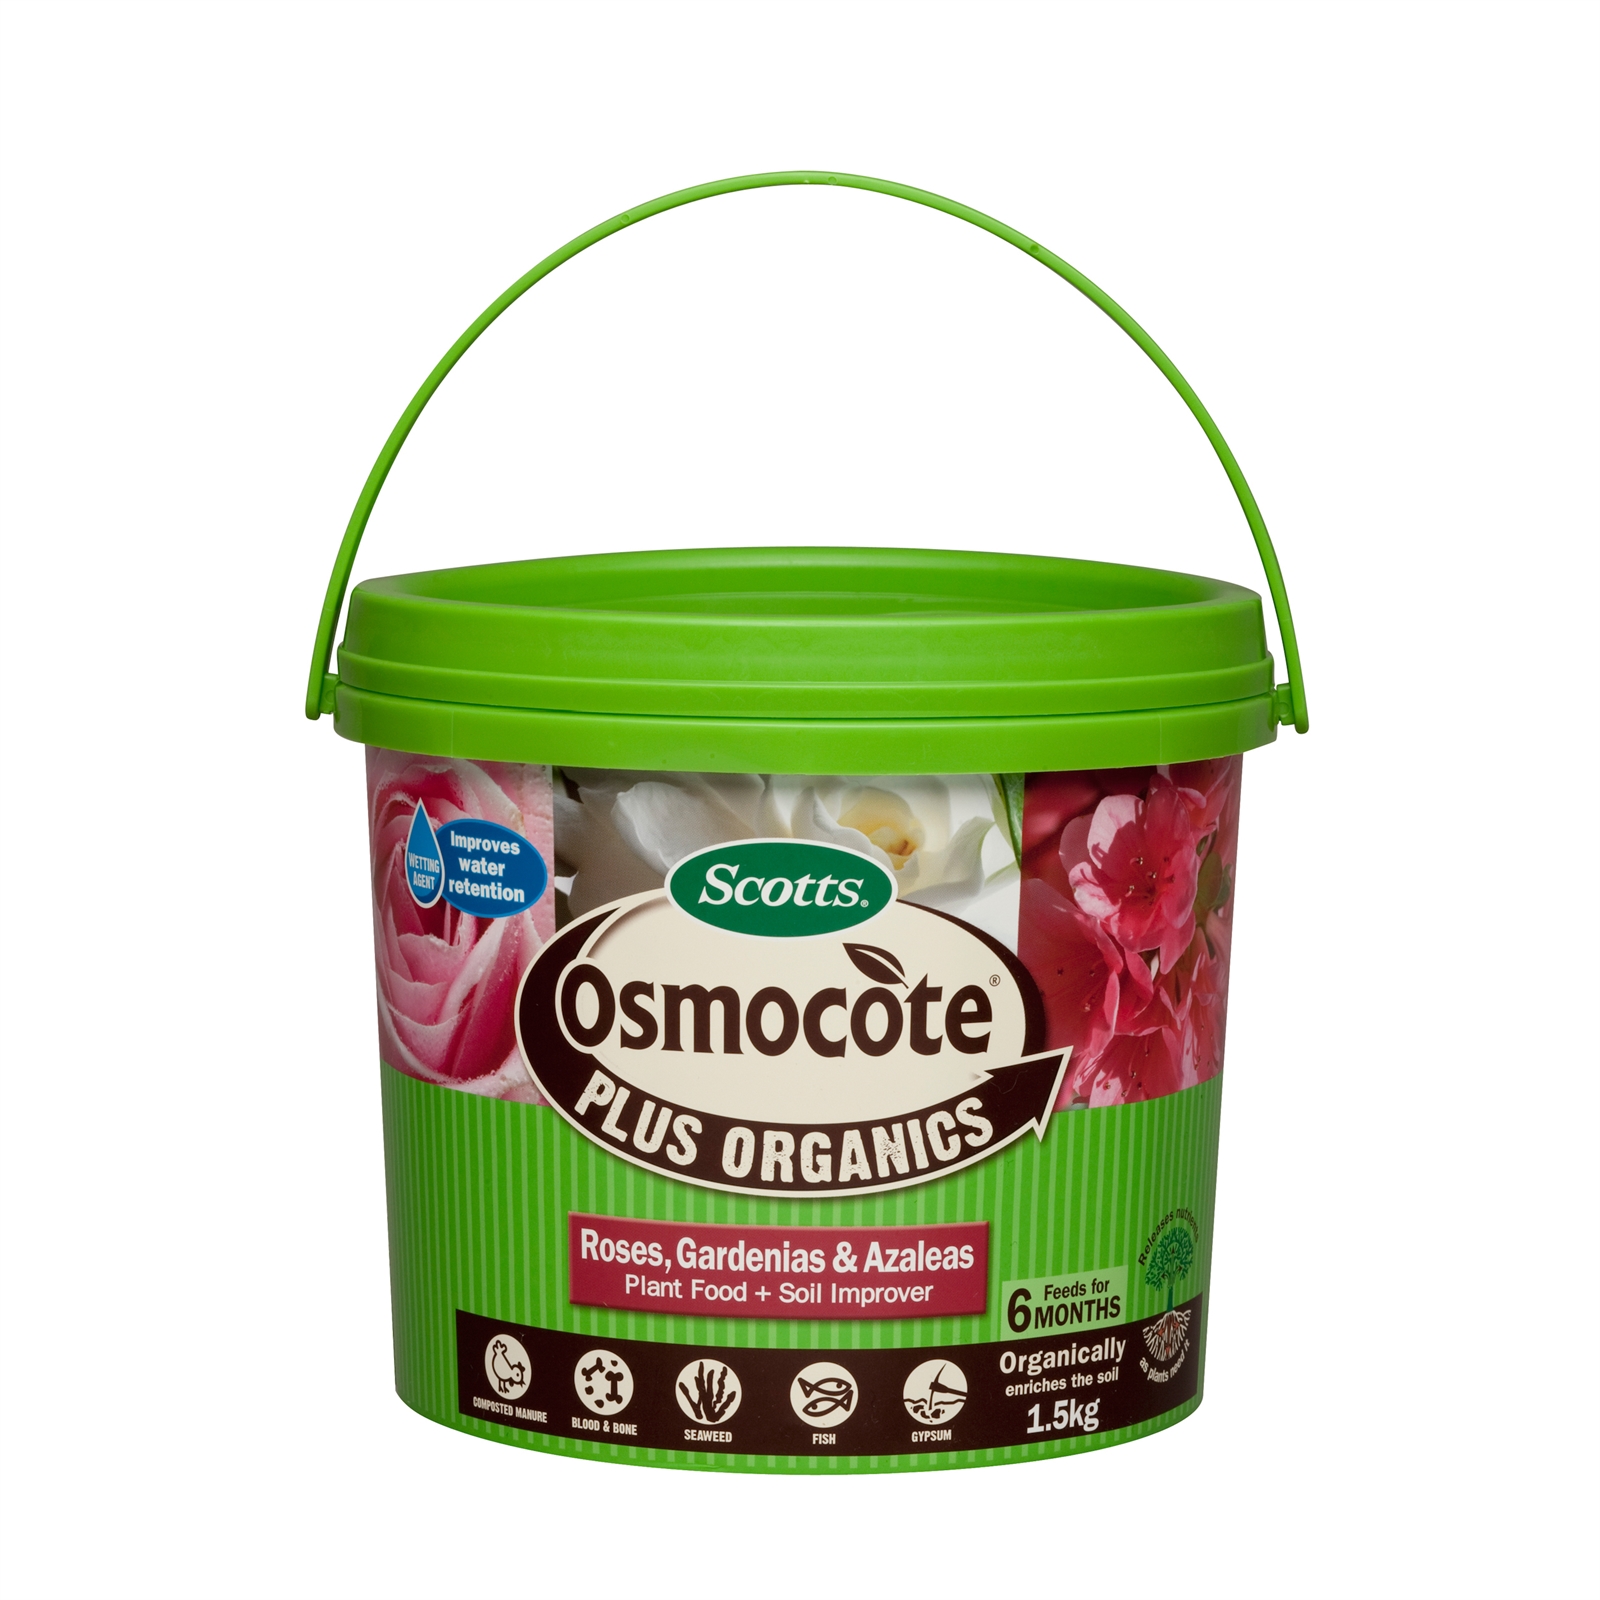 Osmocote Plus Organics 1.5kg Rose Gardenia And Azalea Fertiliser